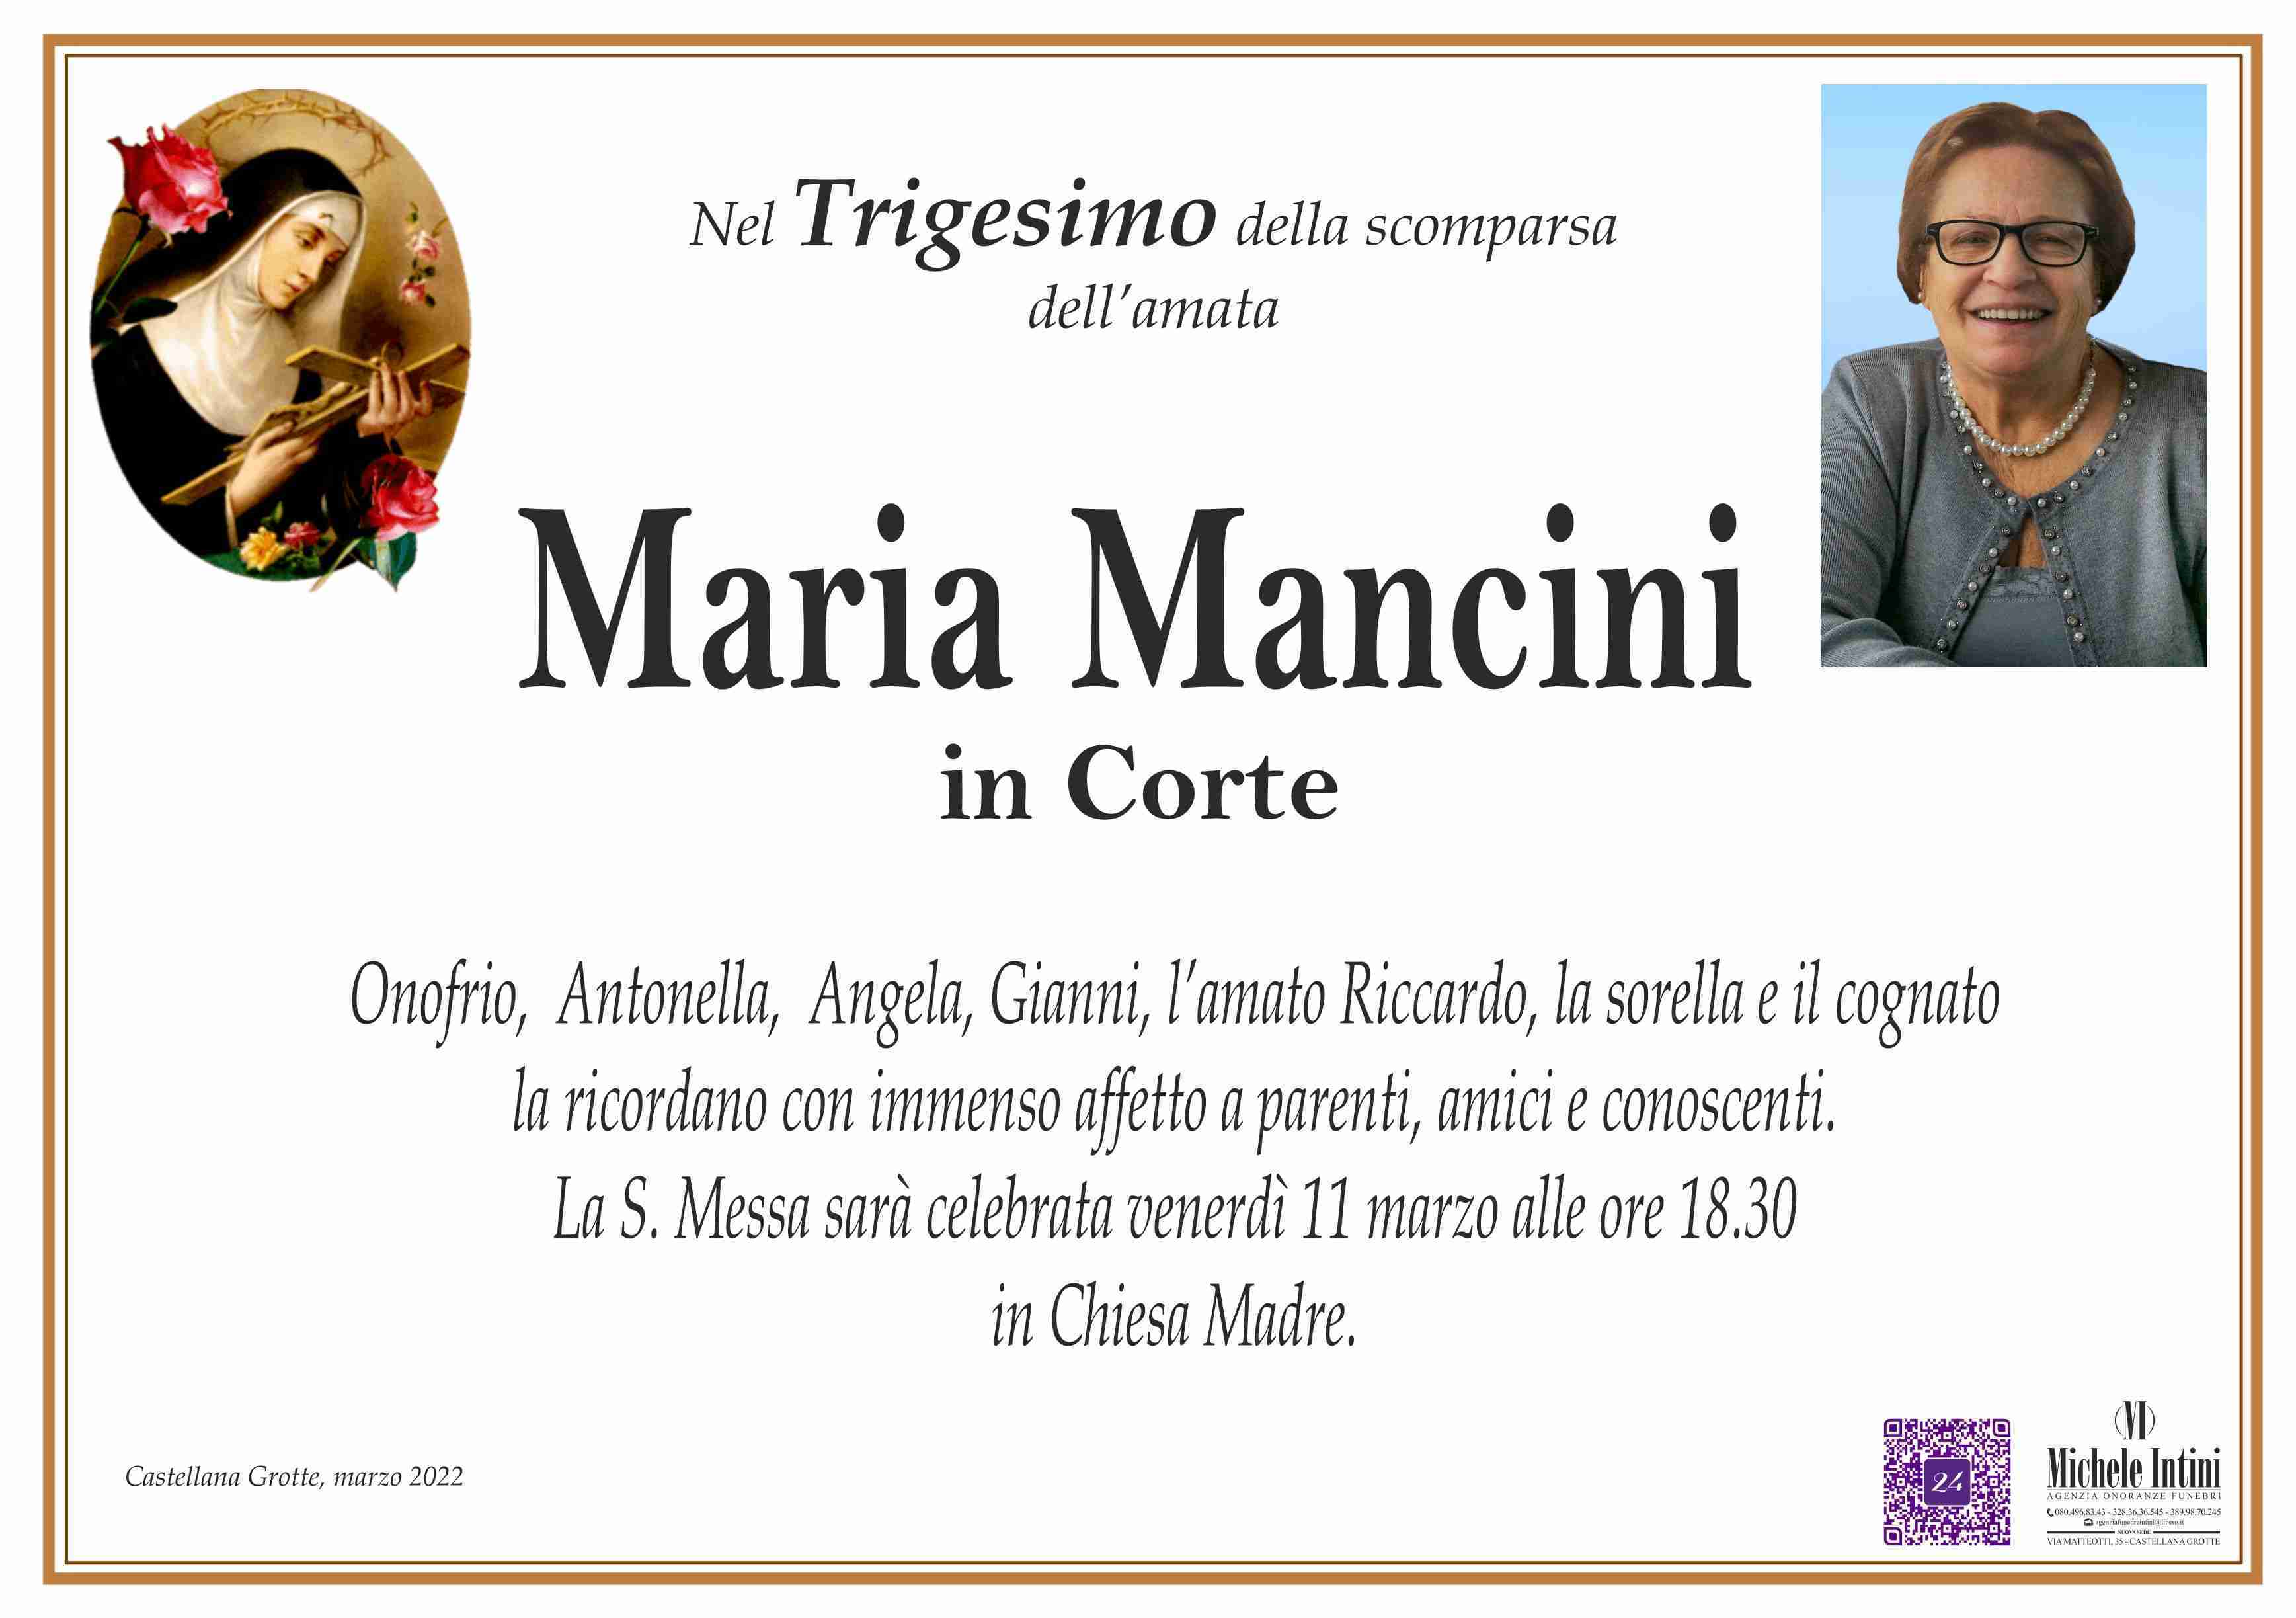 Maria Mancini